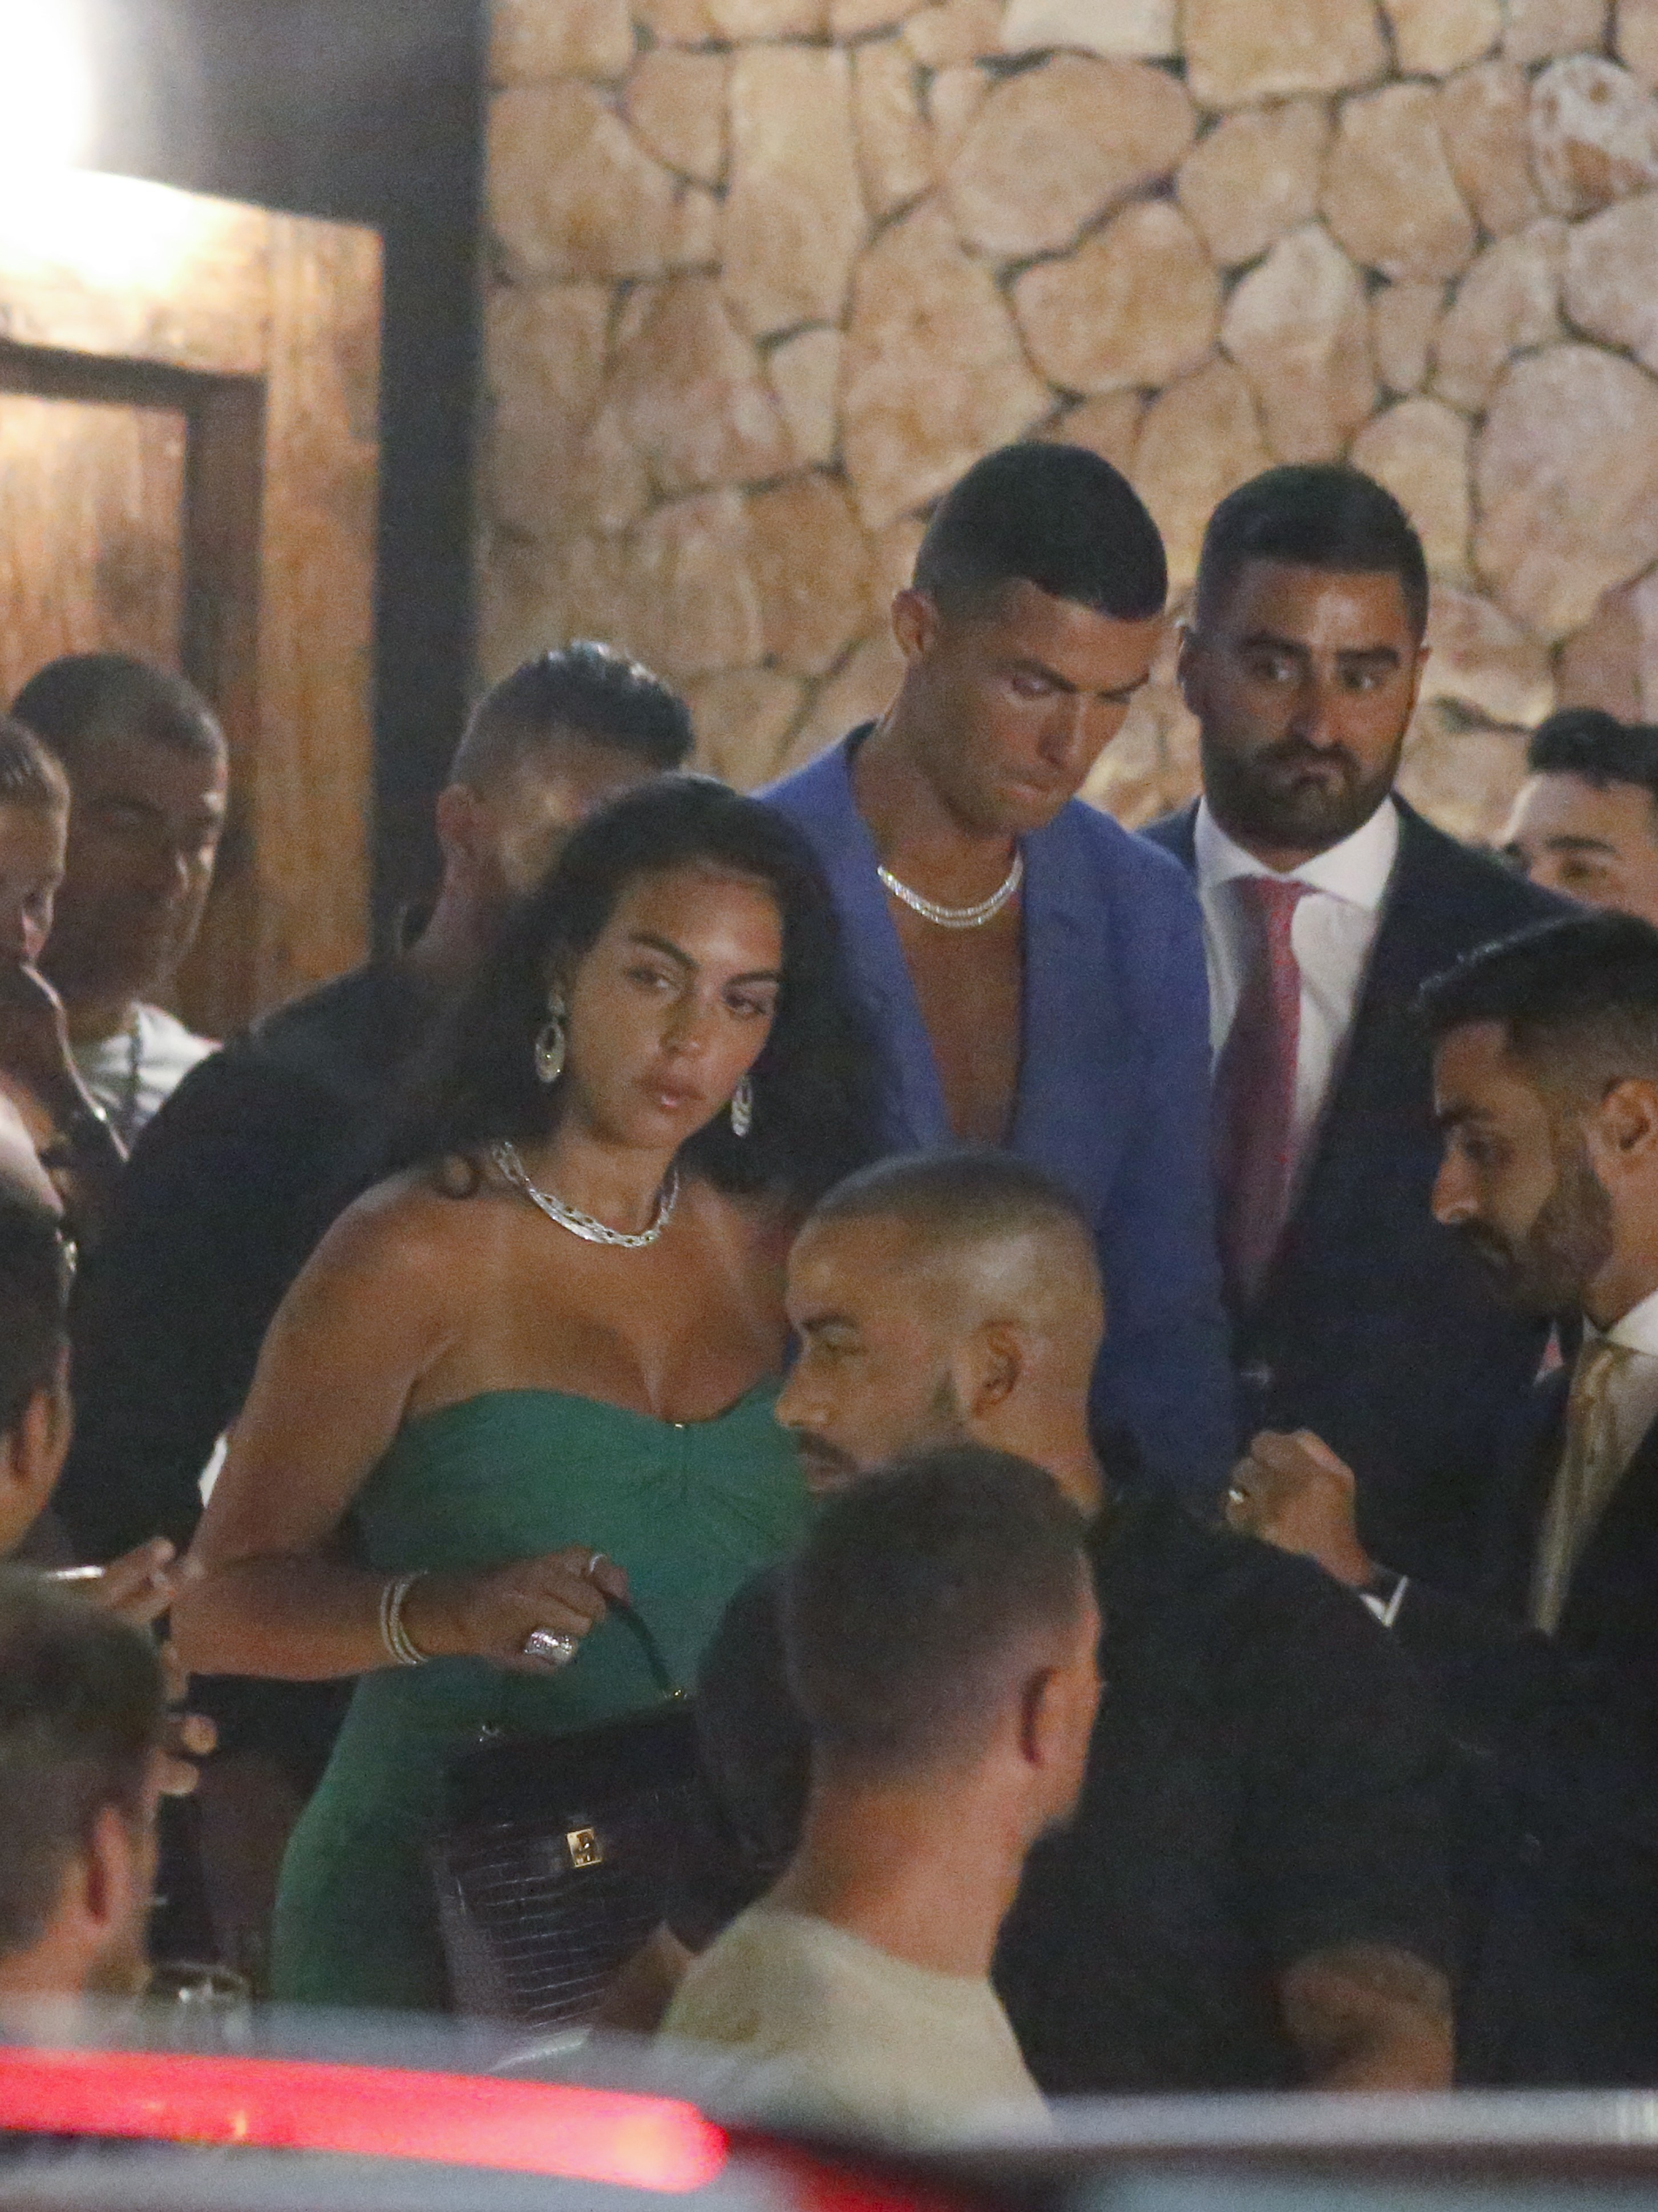 Noche divertida. Cristiano Ronaldo y Georgina Rodríguez fueron fotografiados cuando salían de un evento privado en Ibiza, en donde disfrutan de unos días de vacaciones. El deportista llevó un traje azul sin remera ni camisa, y su pareja optó por un vestido verde strapless con corte corazón